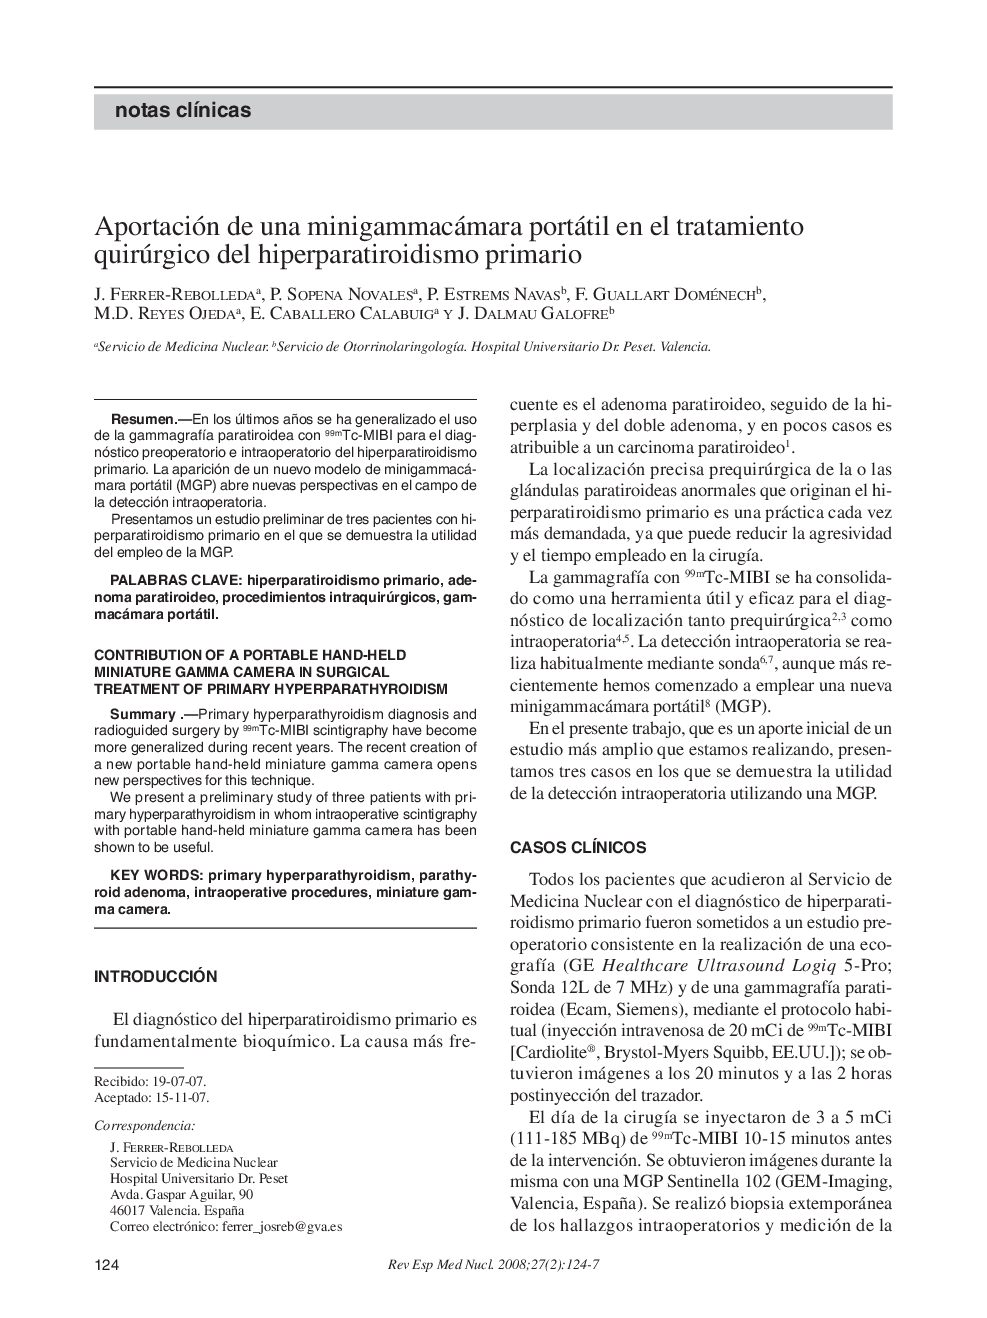 Aportación de una minigammacámara portátil en el tratamiento quirúrgico del hiperparatiroidismo primario